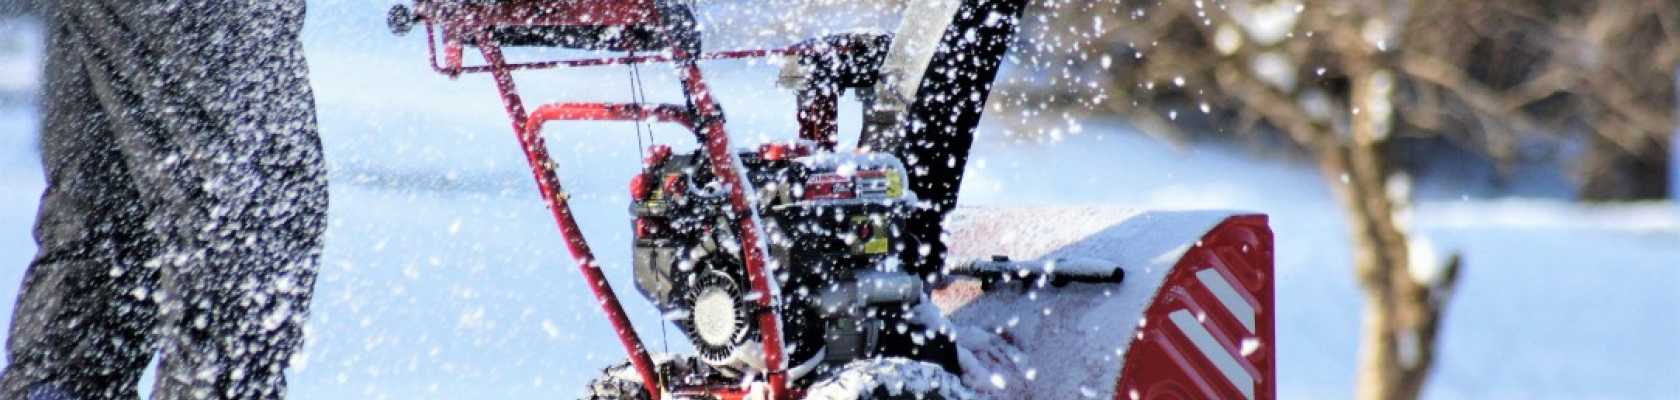 Snow Thrower Preparation & Safety